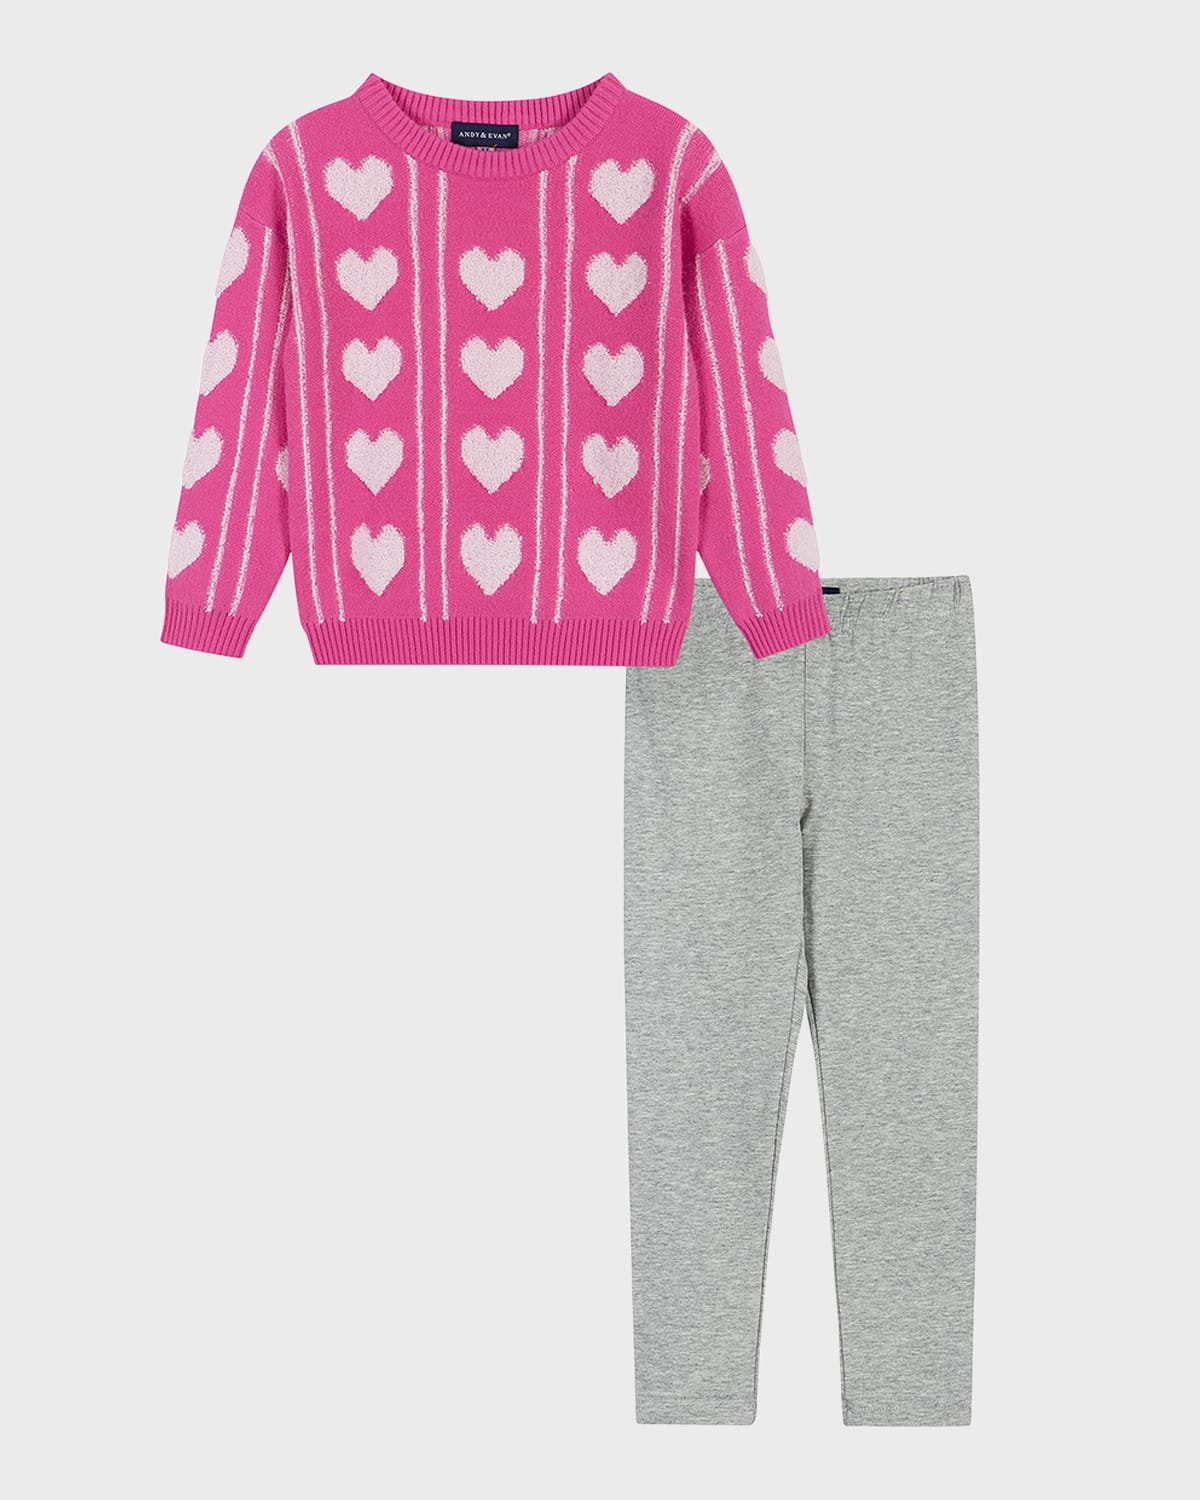 Andy & Evan Kids' Toddler/child Girls Heart Sherpa Sweater & Legging Set In Medium Pink